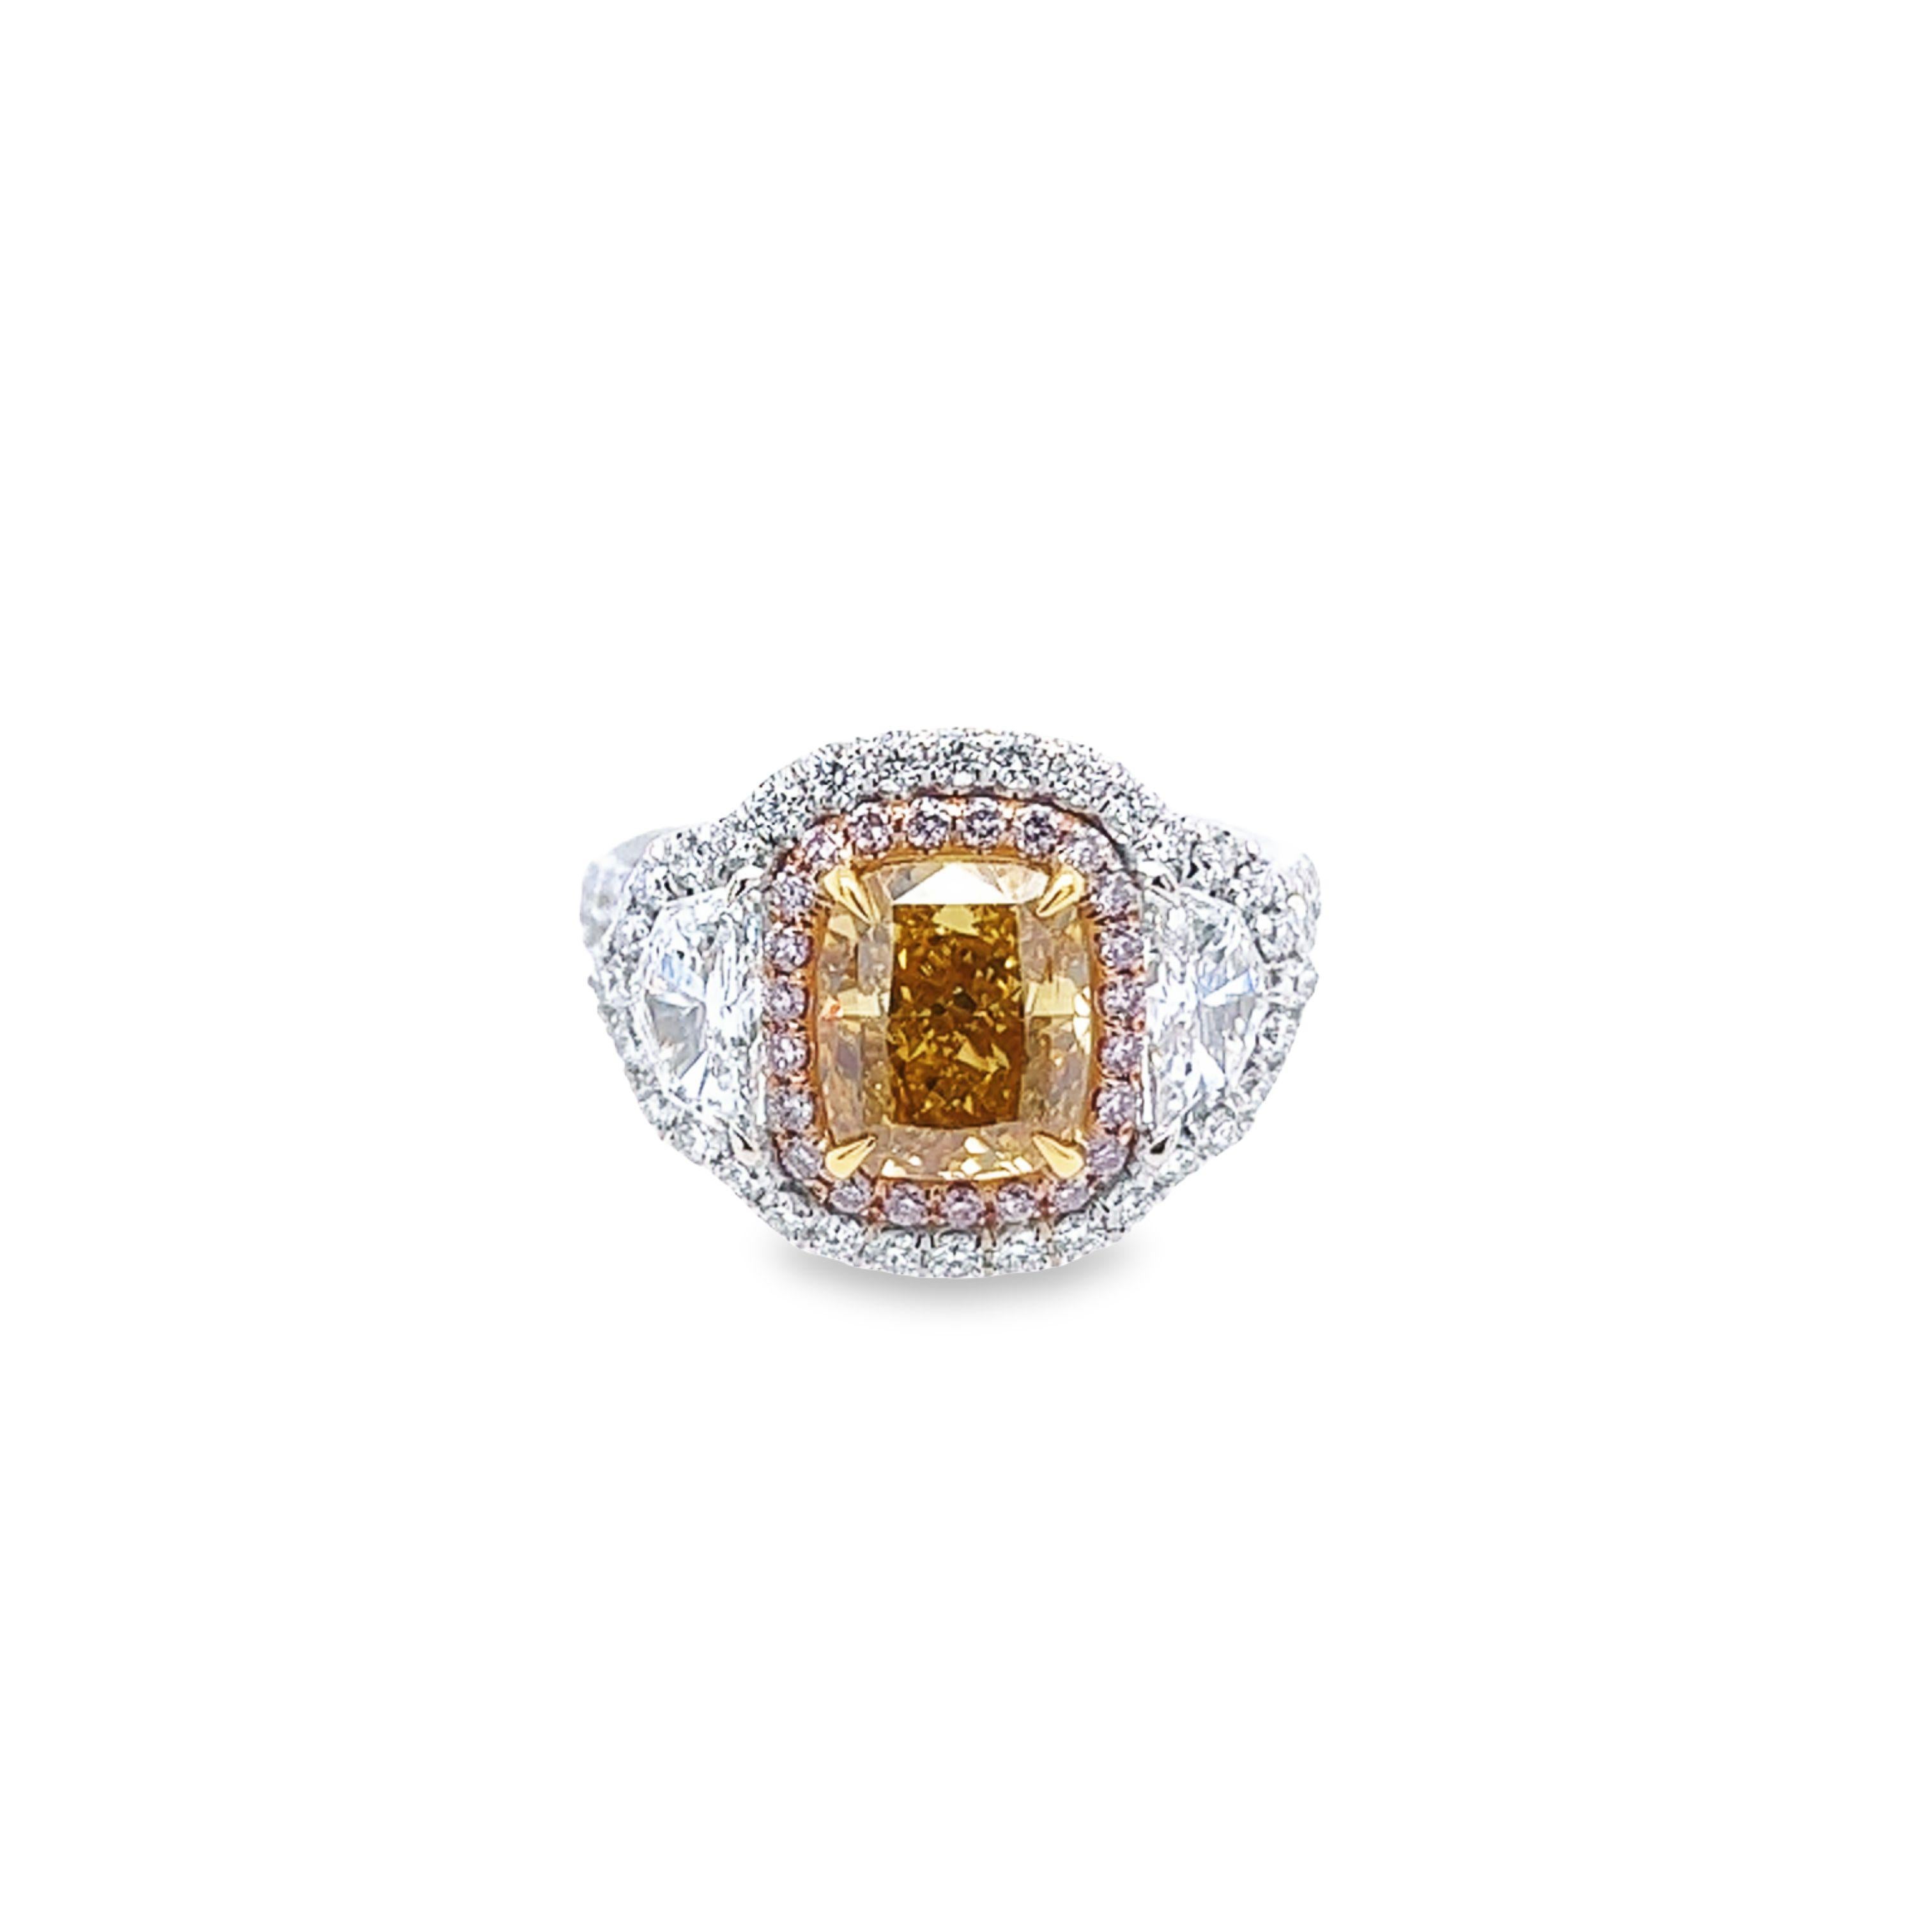 Rosenberg Diamonds and Co. 2,05 Karat im Kissenschliff Fancy Intense Orange Yellow SI1 clarity wird von einem GIA-Zertifikat begleitet. Dieses spektakuläre, seltene Kissen ist voller Brillanz und in einer handgefertigten Platin- und 18-karätigen